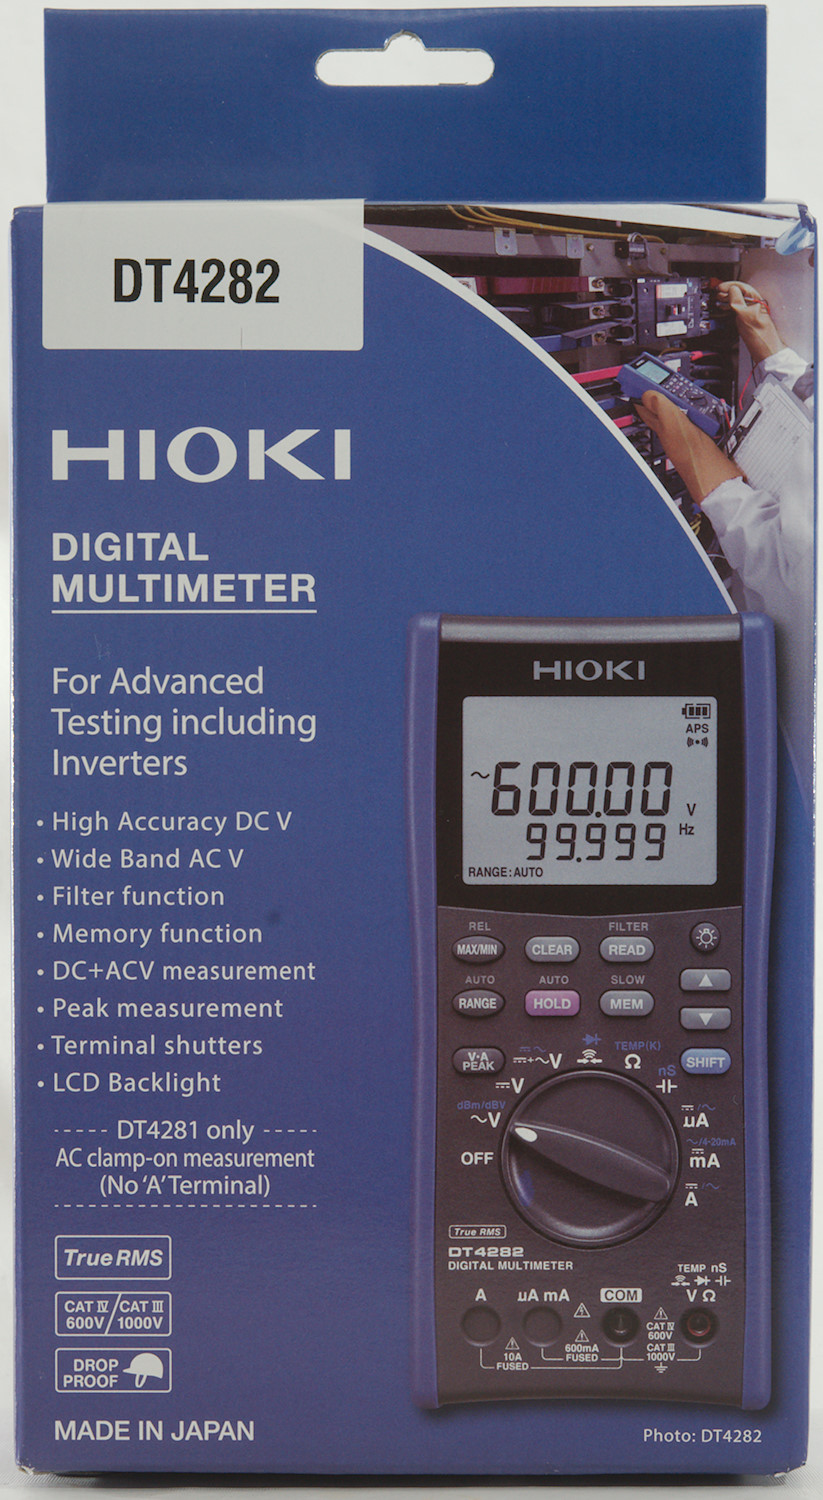 DSC 8111a - Thiết bị đo điện đa năng Hioki DT4282